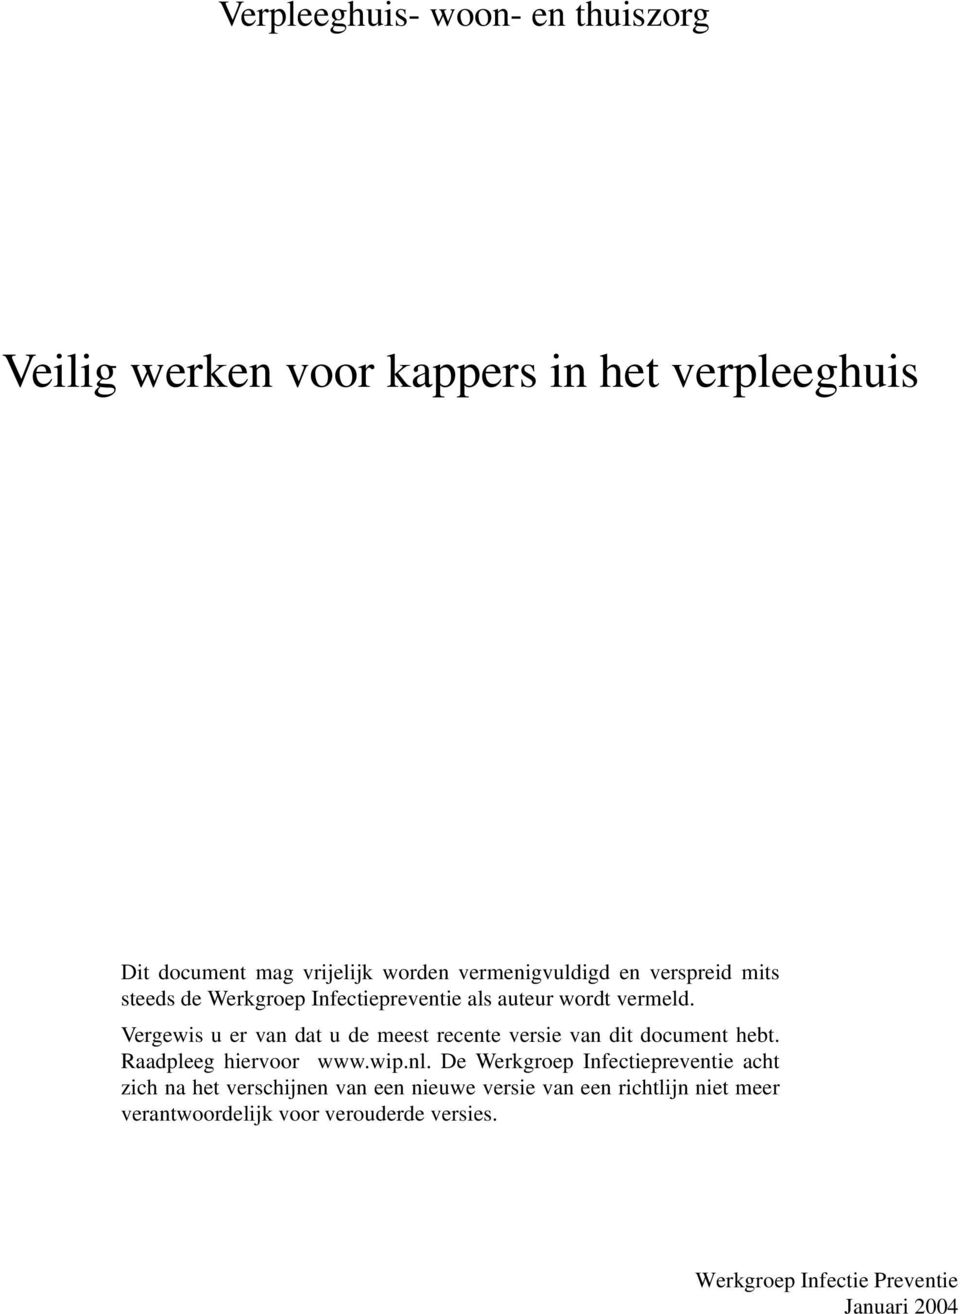 Vergewis u er van dat u de meest recente versie van dit document hebt. Raadpleeg hiervoor www.wip.nl.